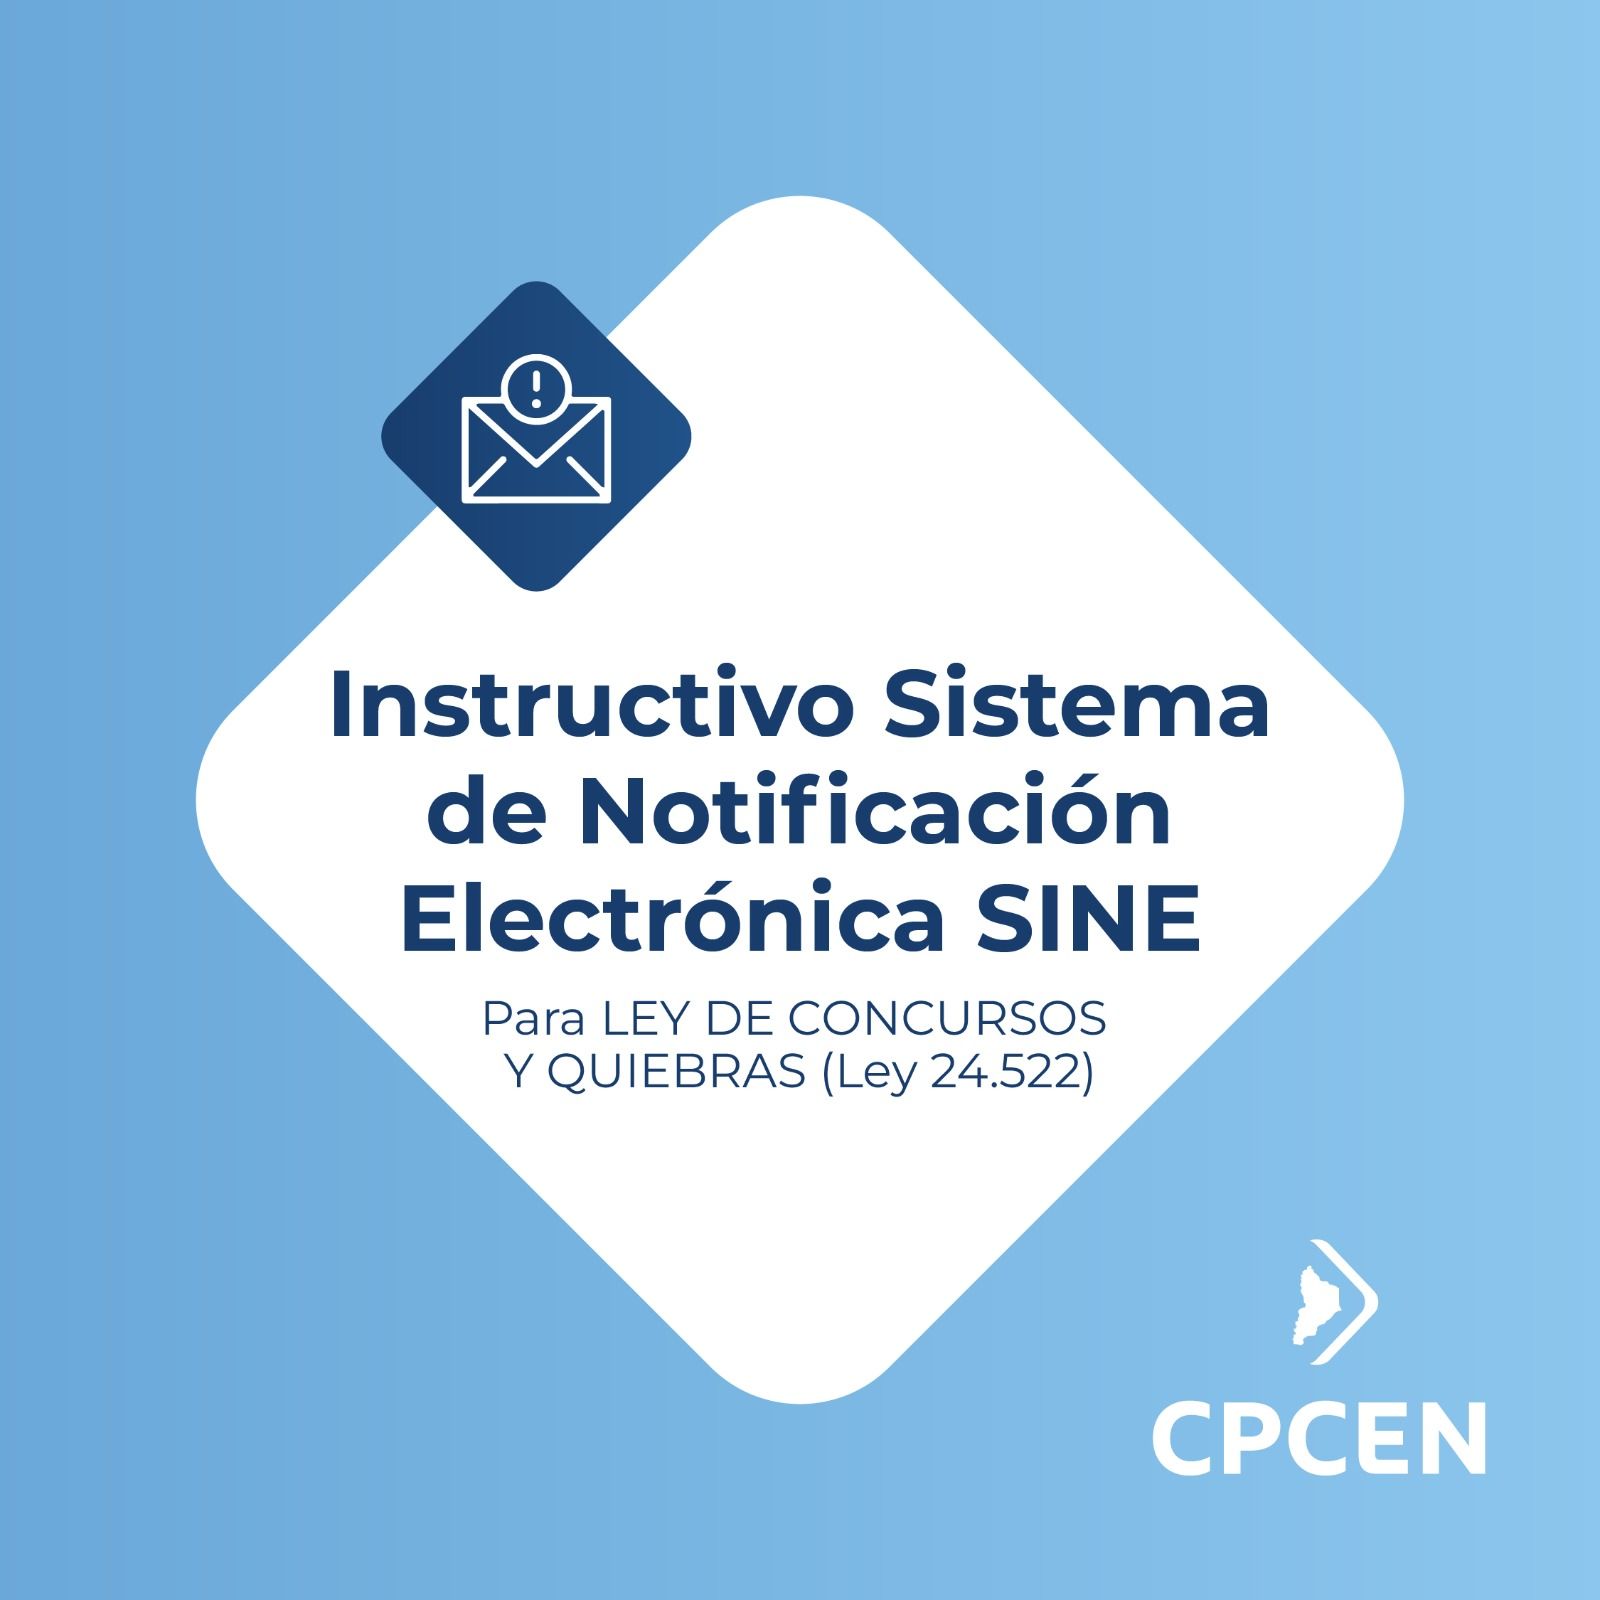 Instructivo Sistema de Notificación Electrónica SINE